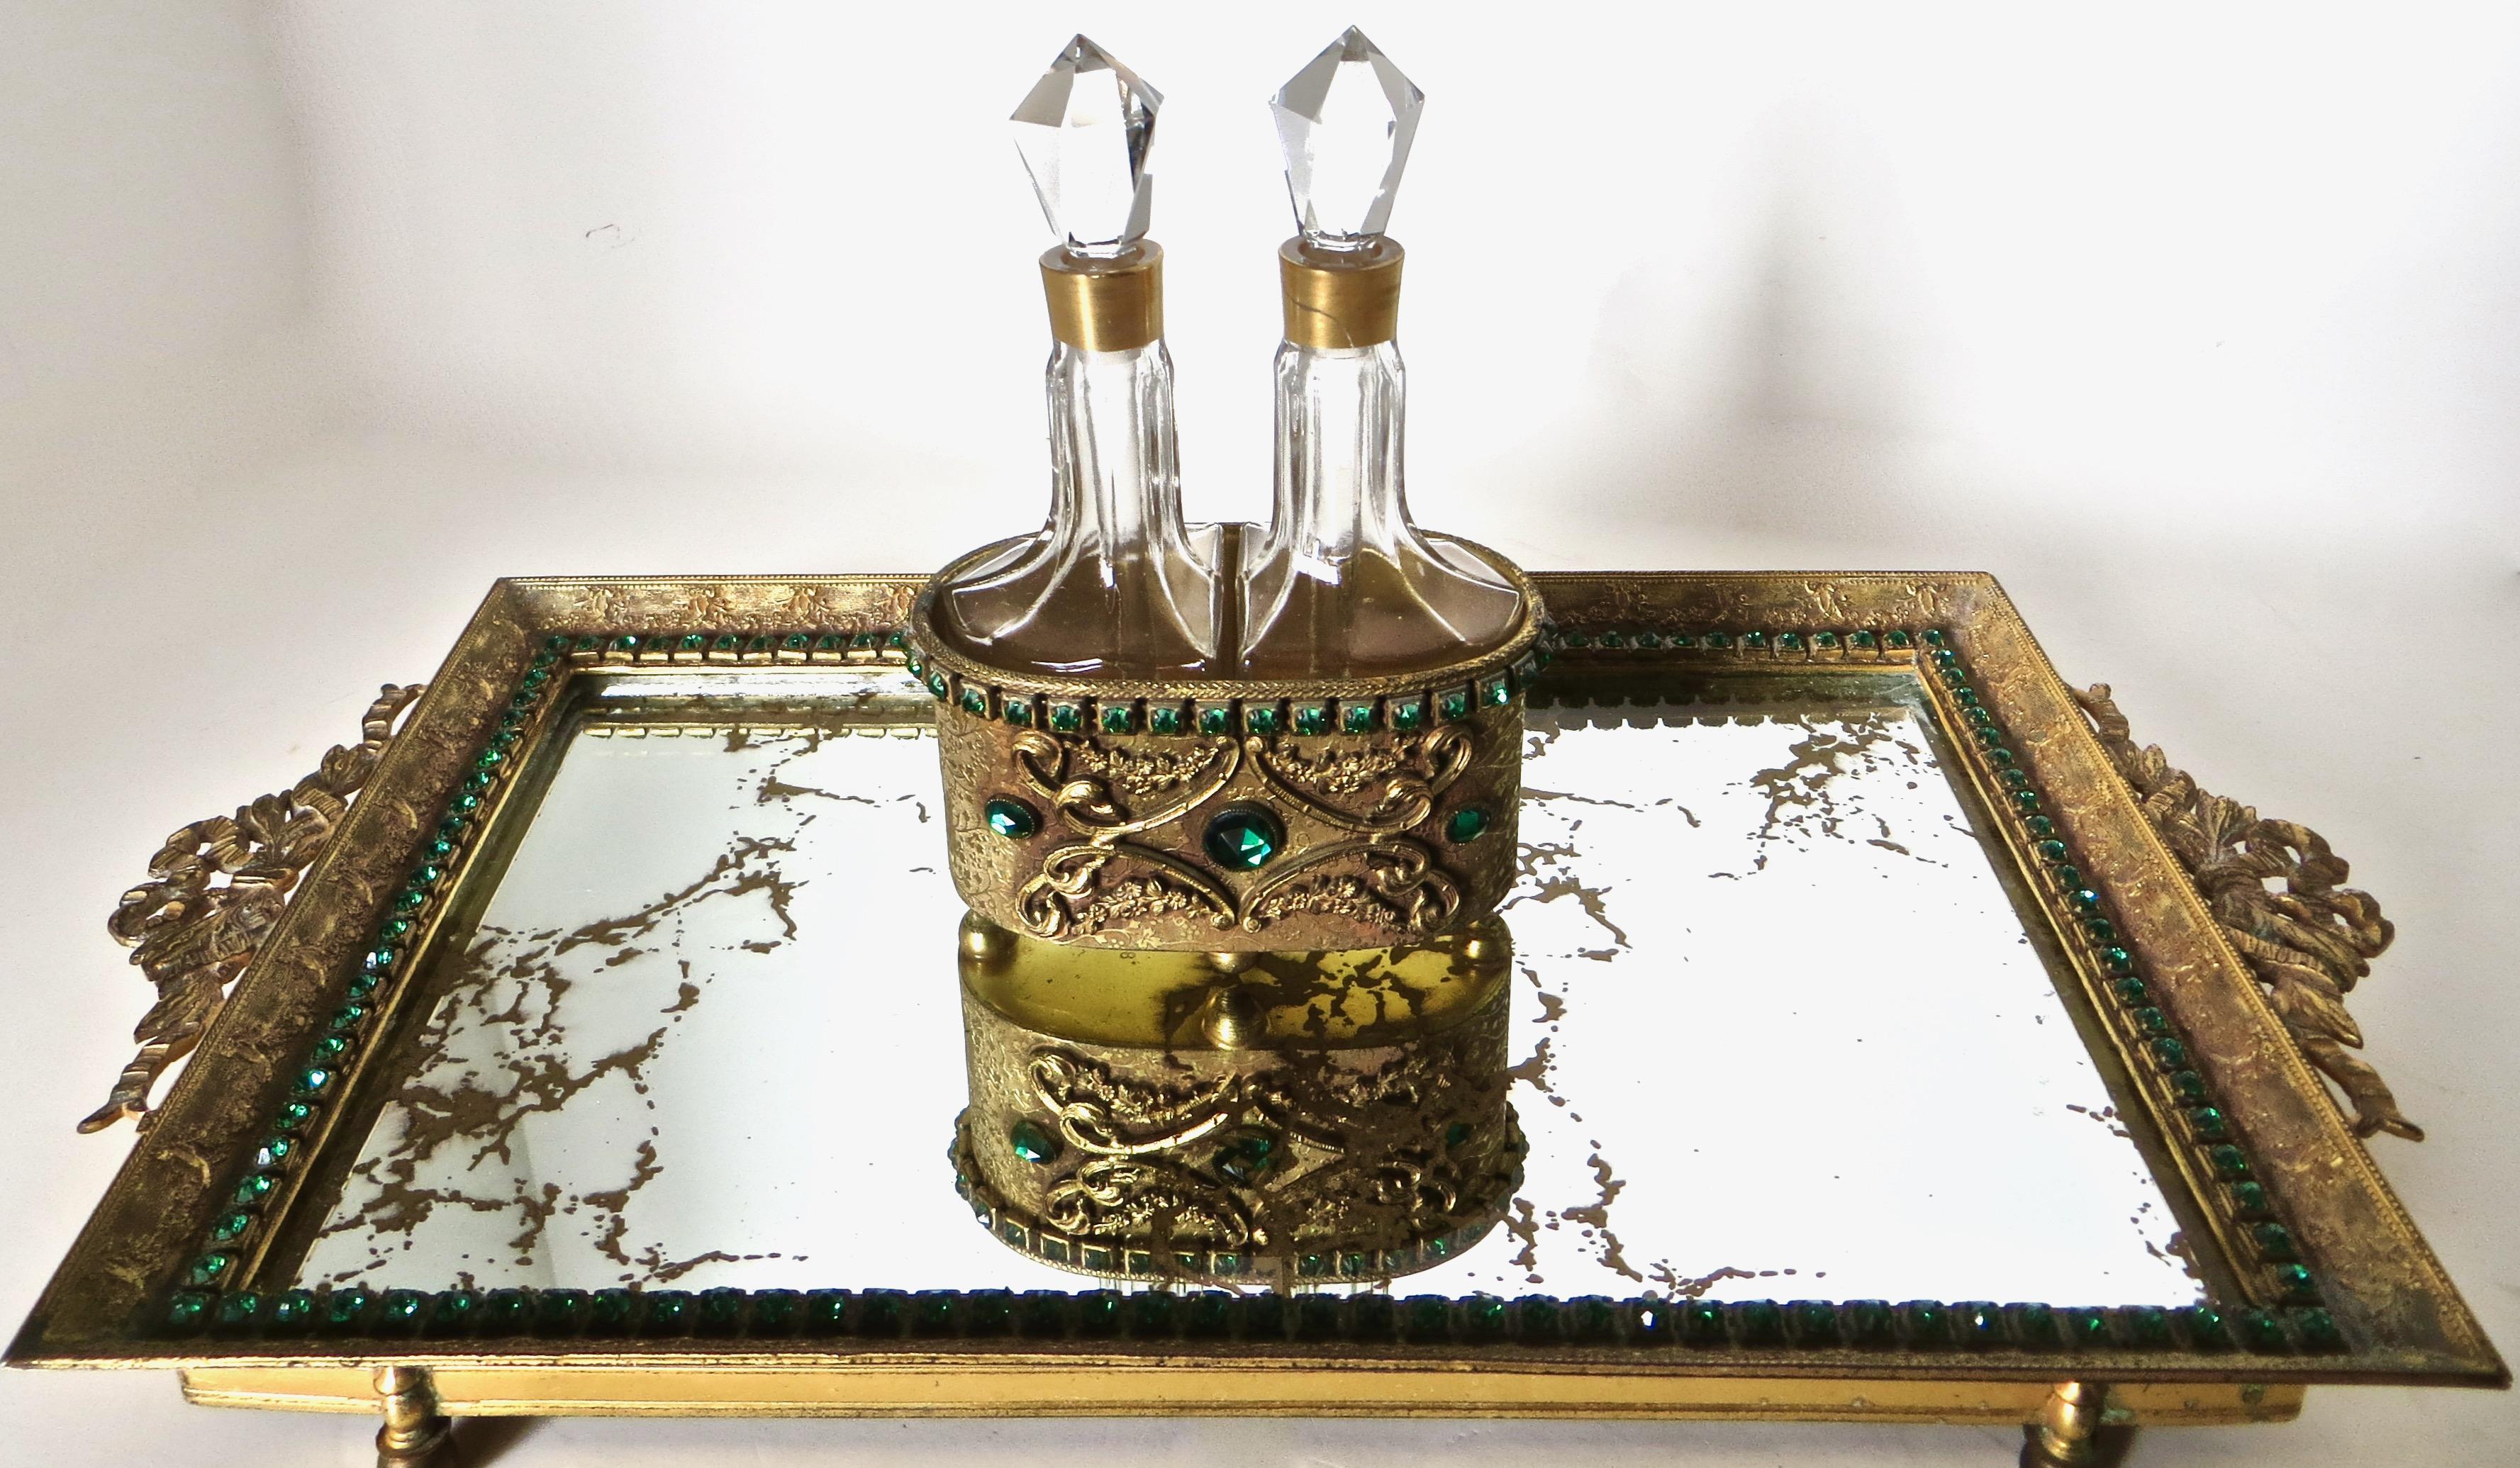 Ein Paar zusammengehöriger Parfümflakons aus Kristall in einer vergoldeten Schatulle mit Juwelen, die auf einem reich verzierten Spiegeltablett ruht. Der Hersteller ist E. & J. Bass (gekennzeichnet mit 